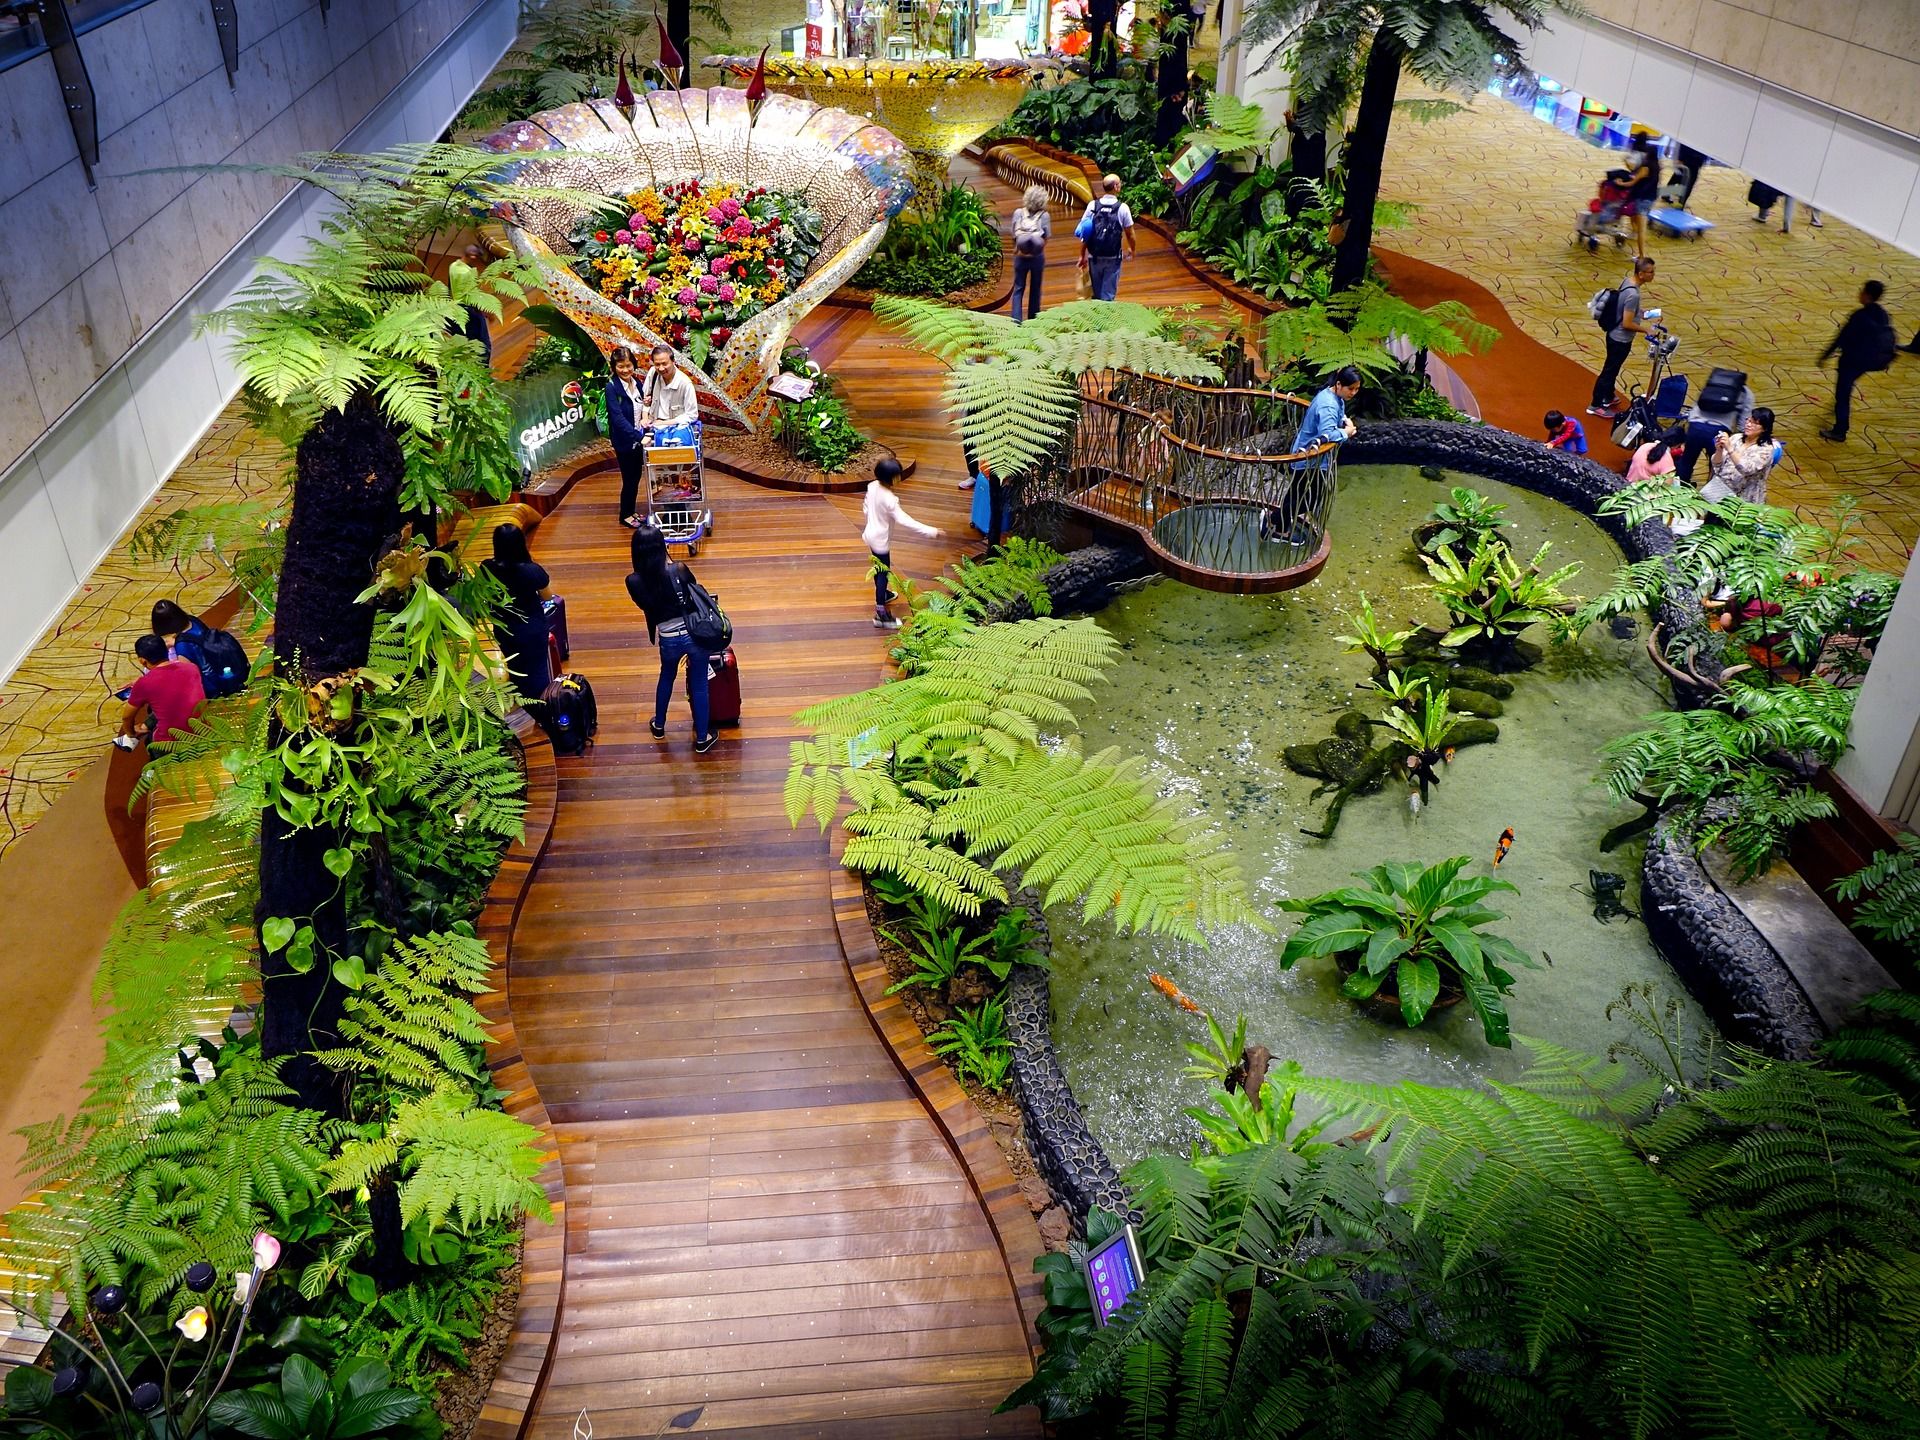 An indoor garden in Changi Airport